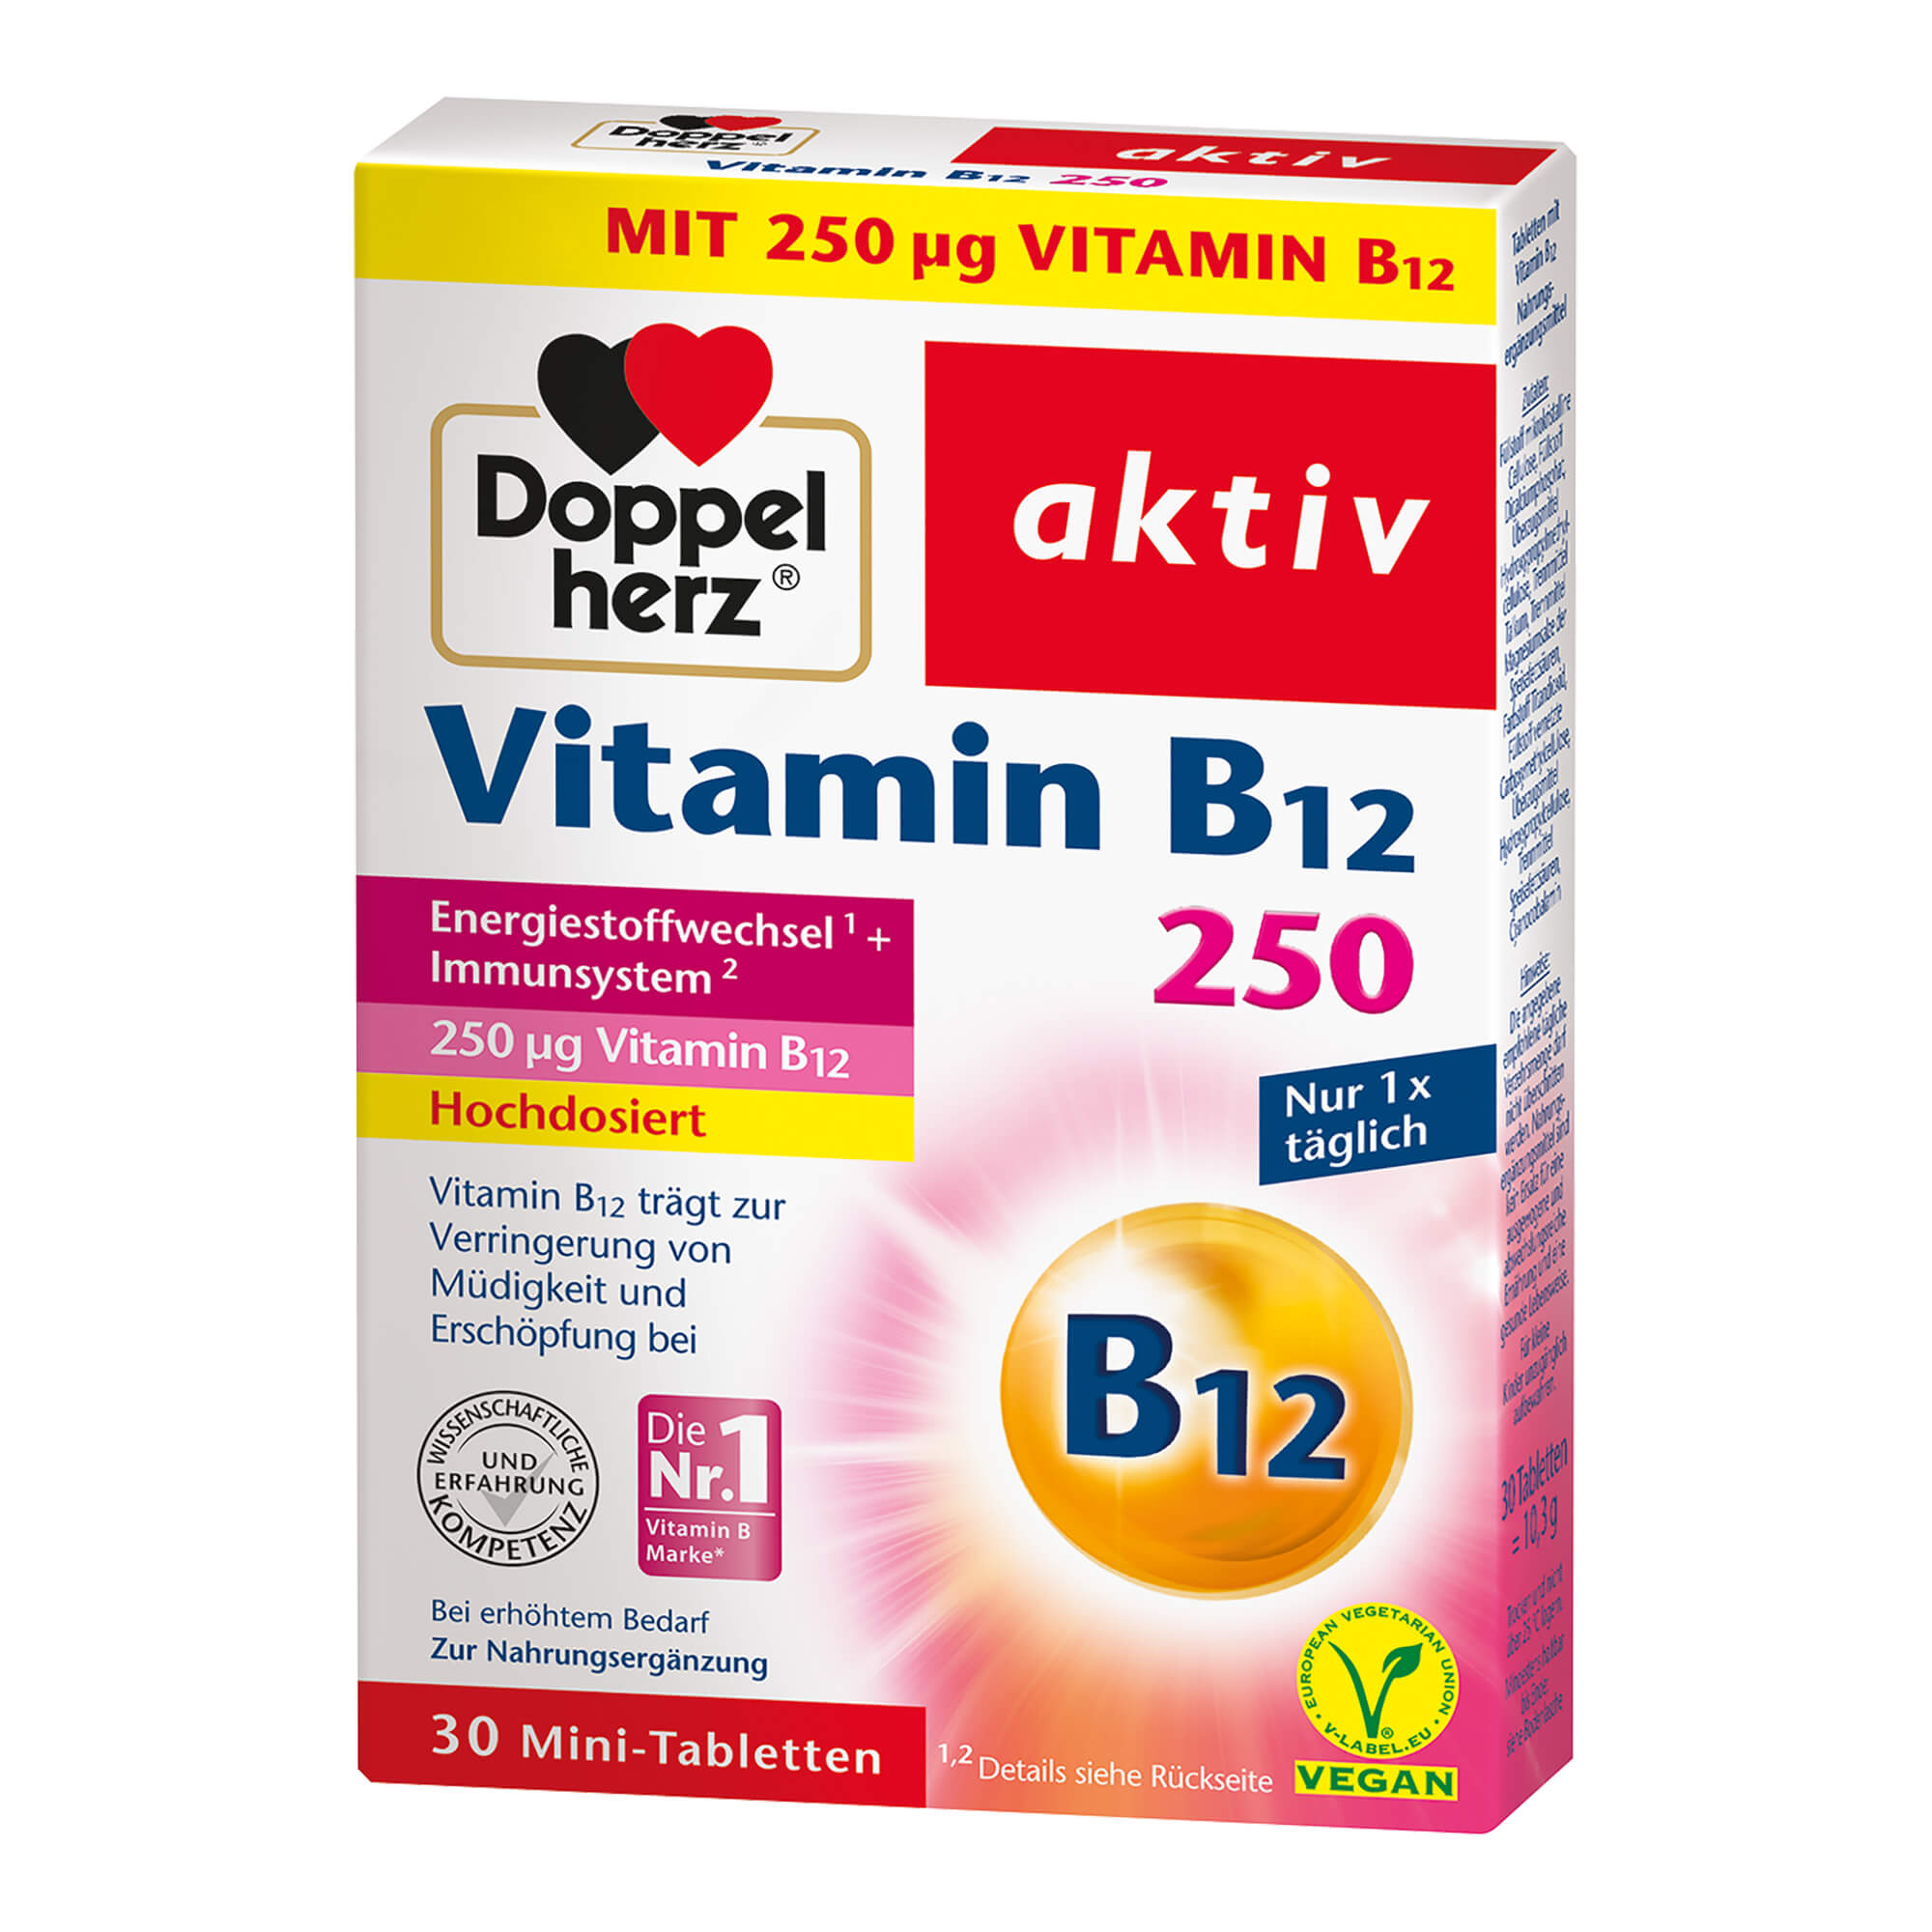 Nahrungsergänzungsmittel mit hochdosiertem Vitamin B12. Für Energiestoffwechsel und Immunsystem.